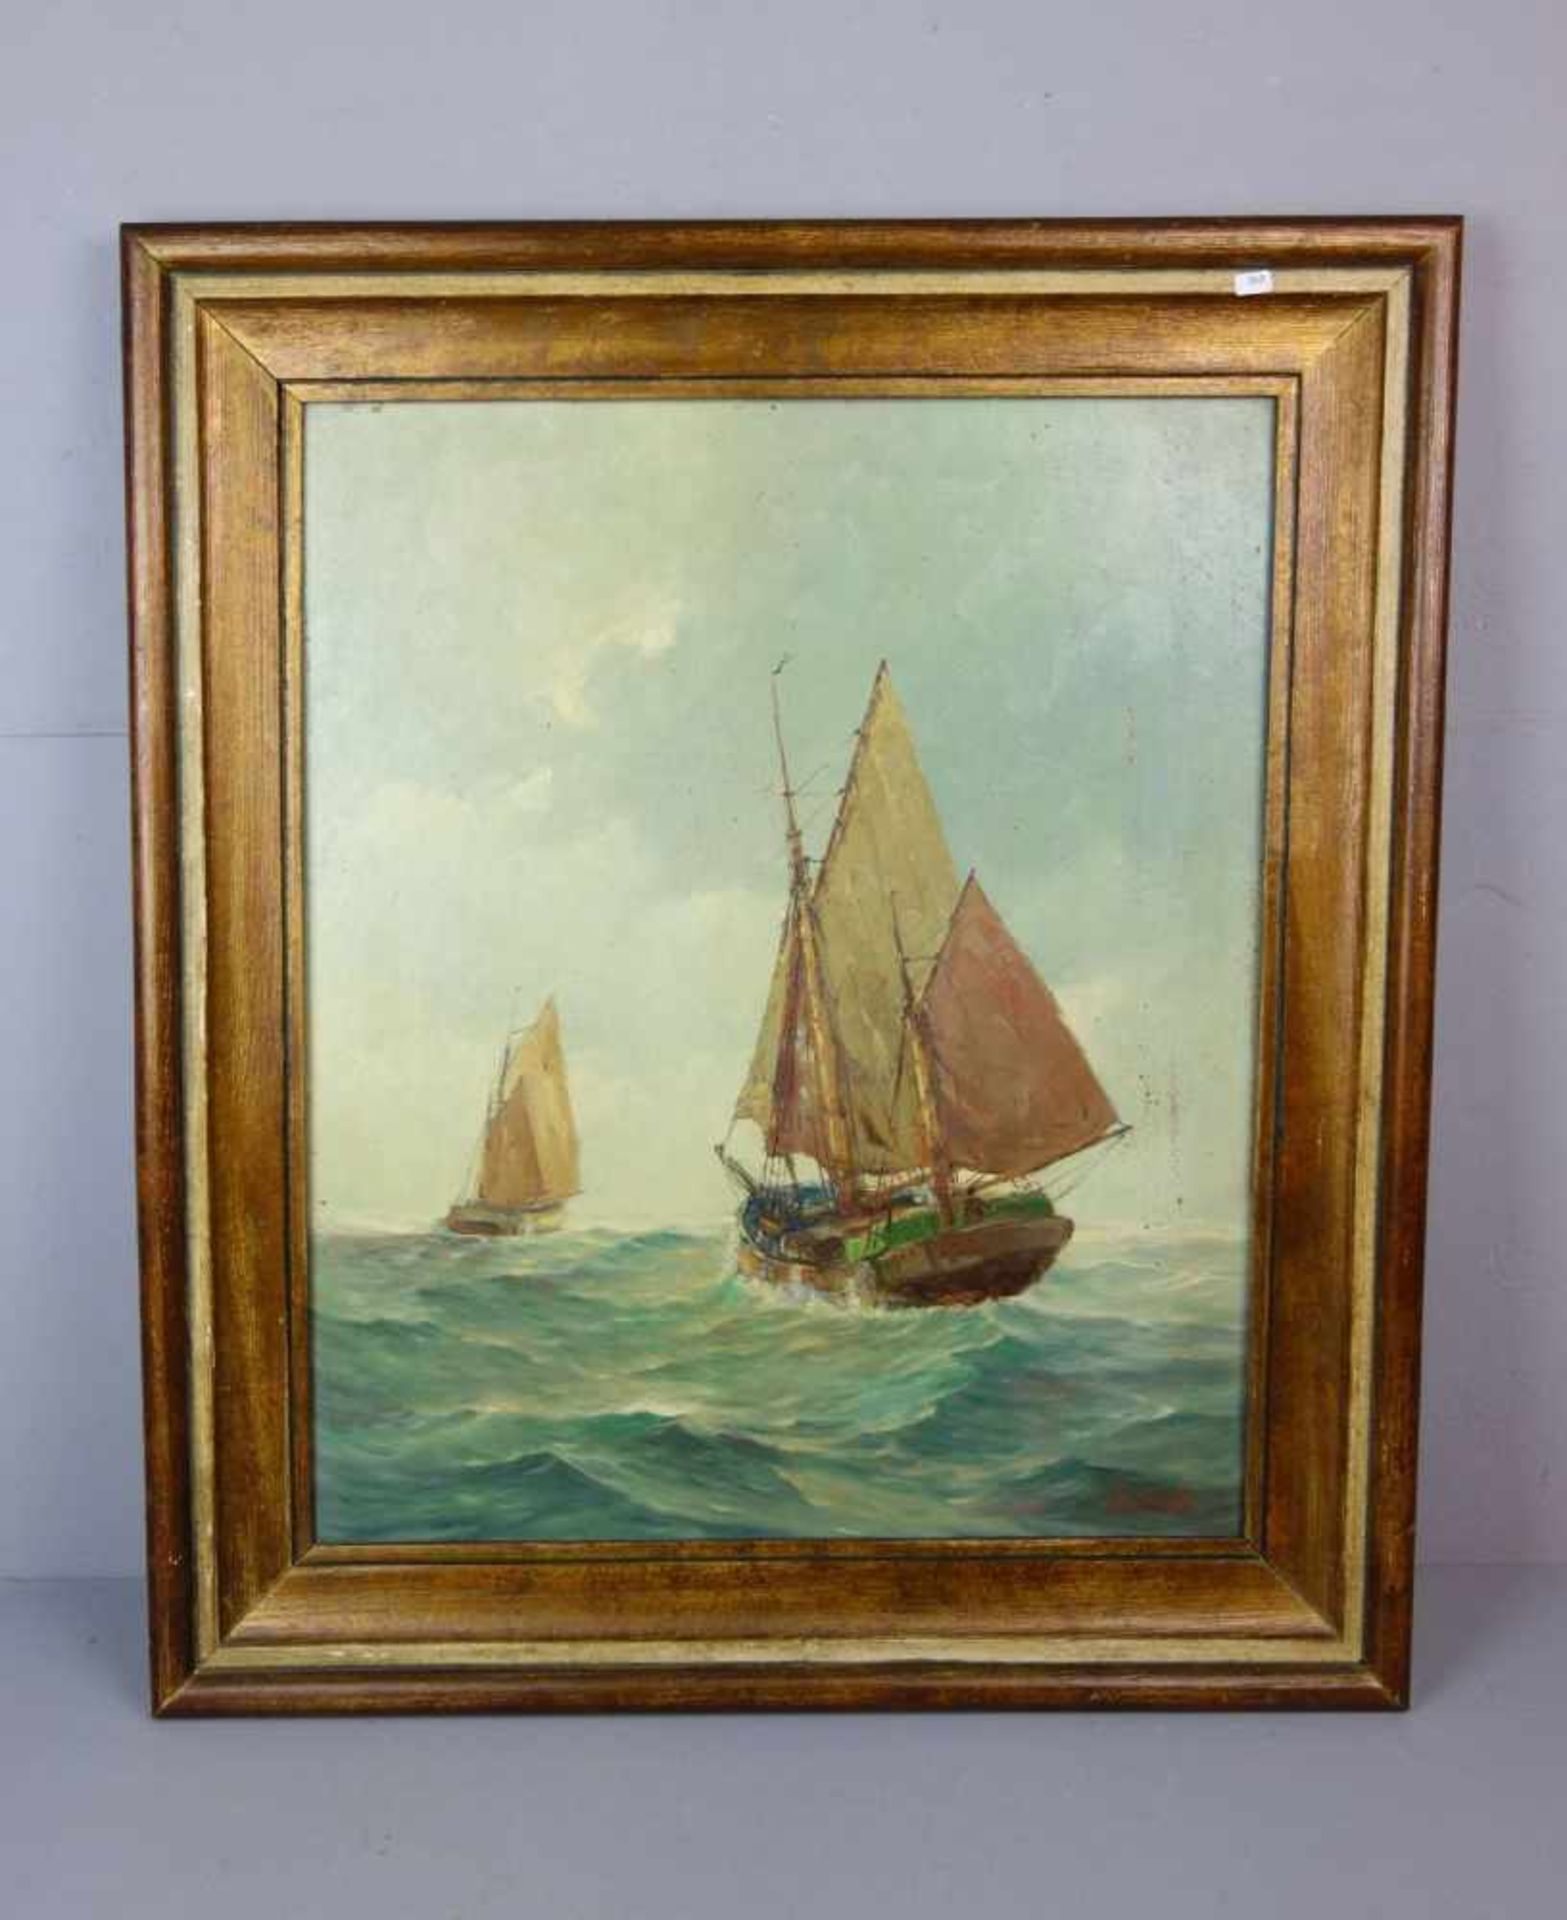 AMBRASATH, FRANZ (1889-1974), Gemälde / painting: "Seestück mit Segelschiffen", Öl auf